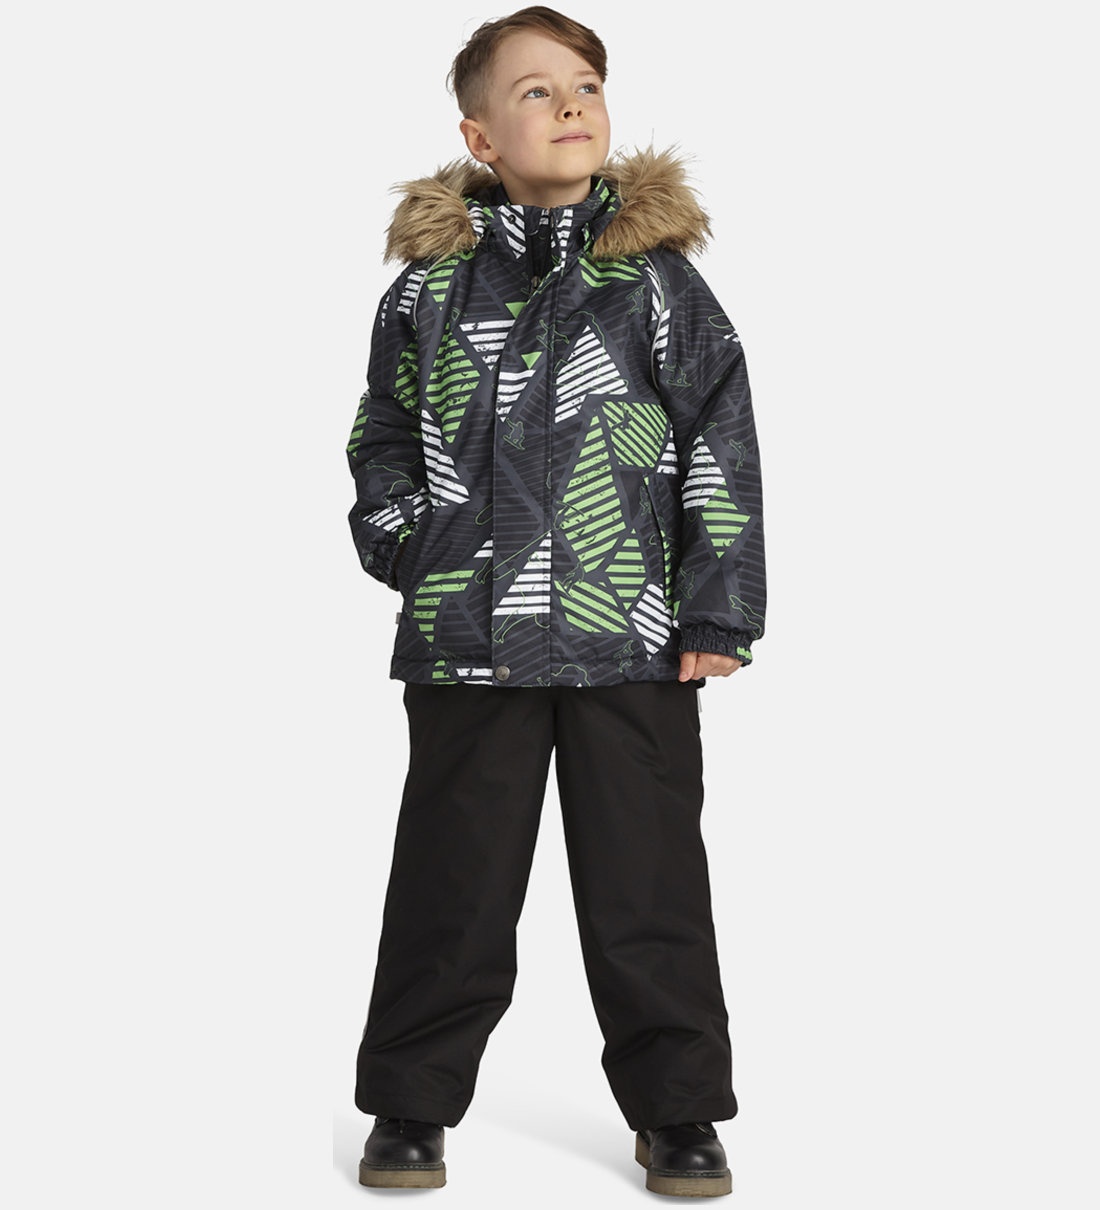 Комплект верхней одежды Huppa Winter, Серый, Зеленый, Черный, 146